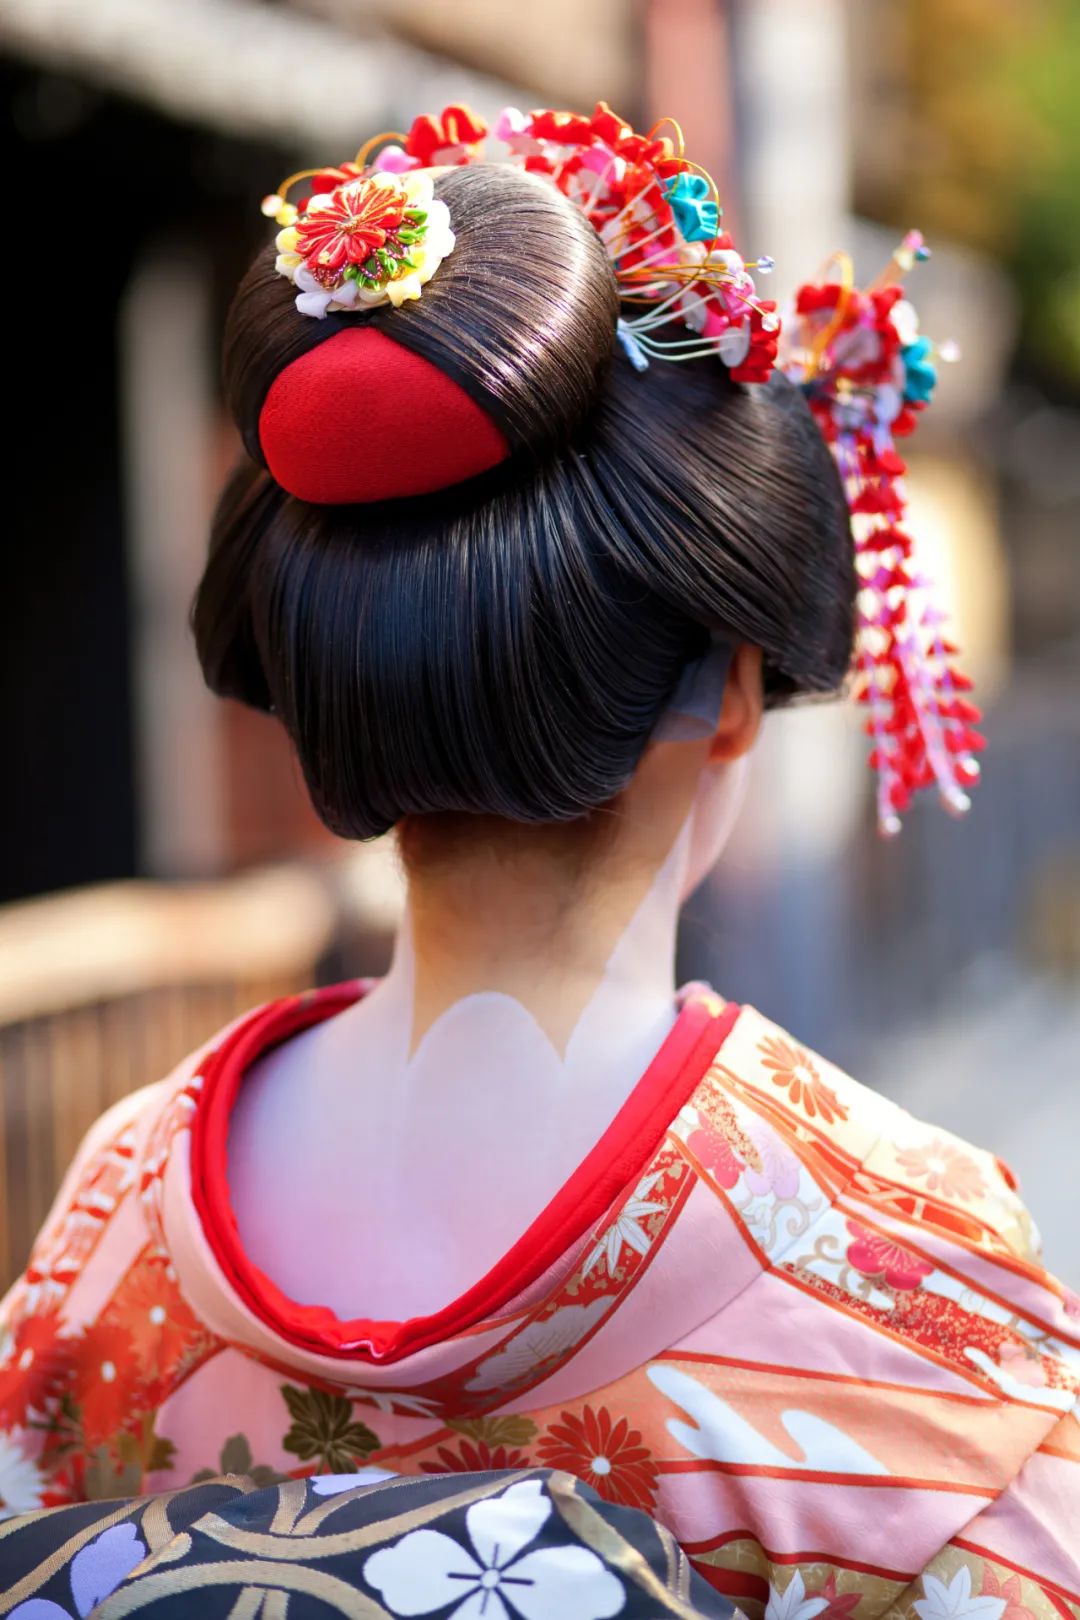 艺术性的艺妓日本纵向妇女 库存图片. 图片 包括有 投反对票, 中国, 聚会所, 礼服, 制作, 方式, 夫人 - 18561211